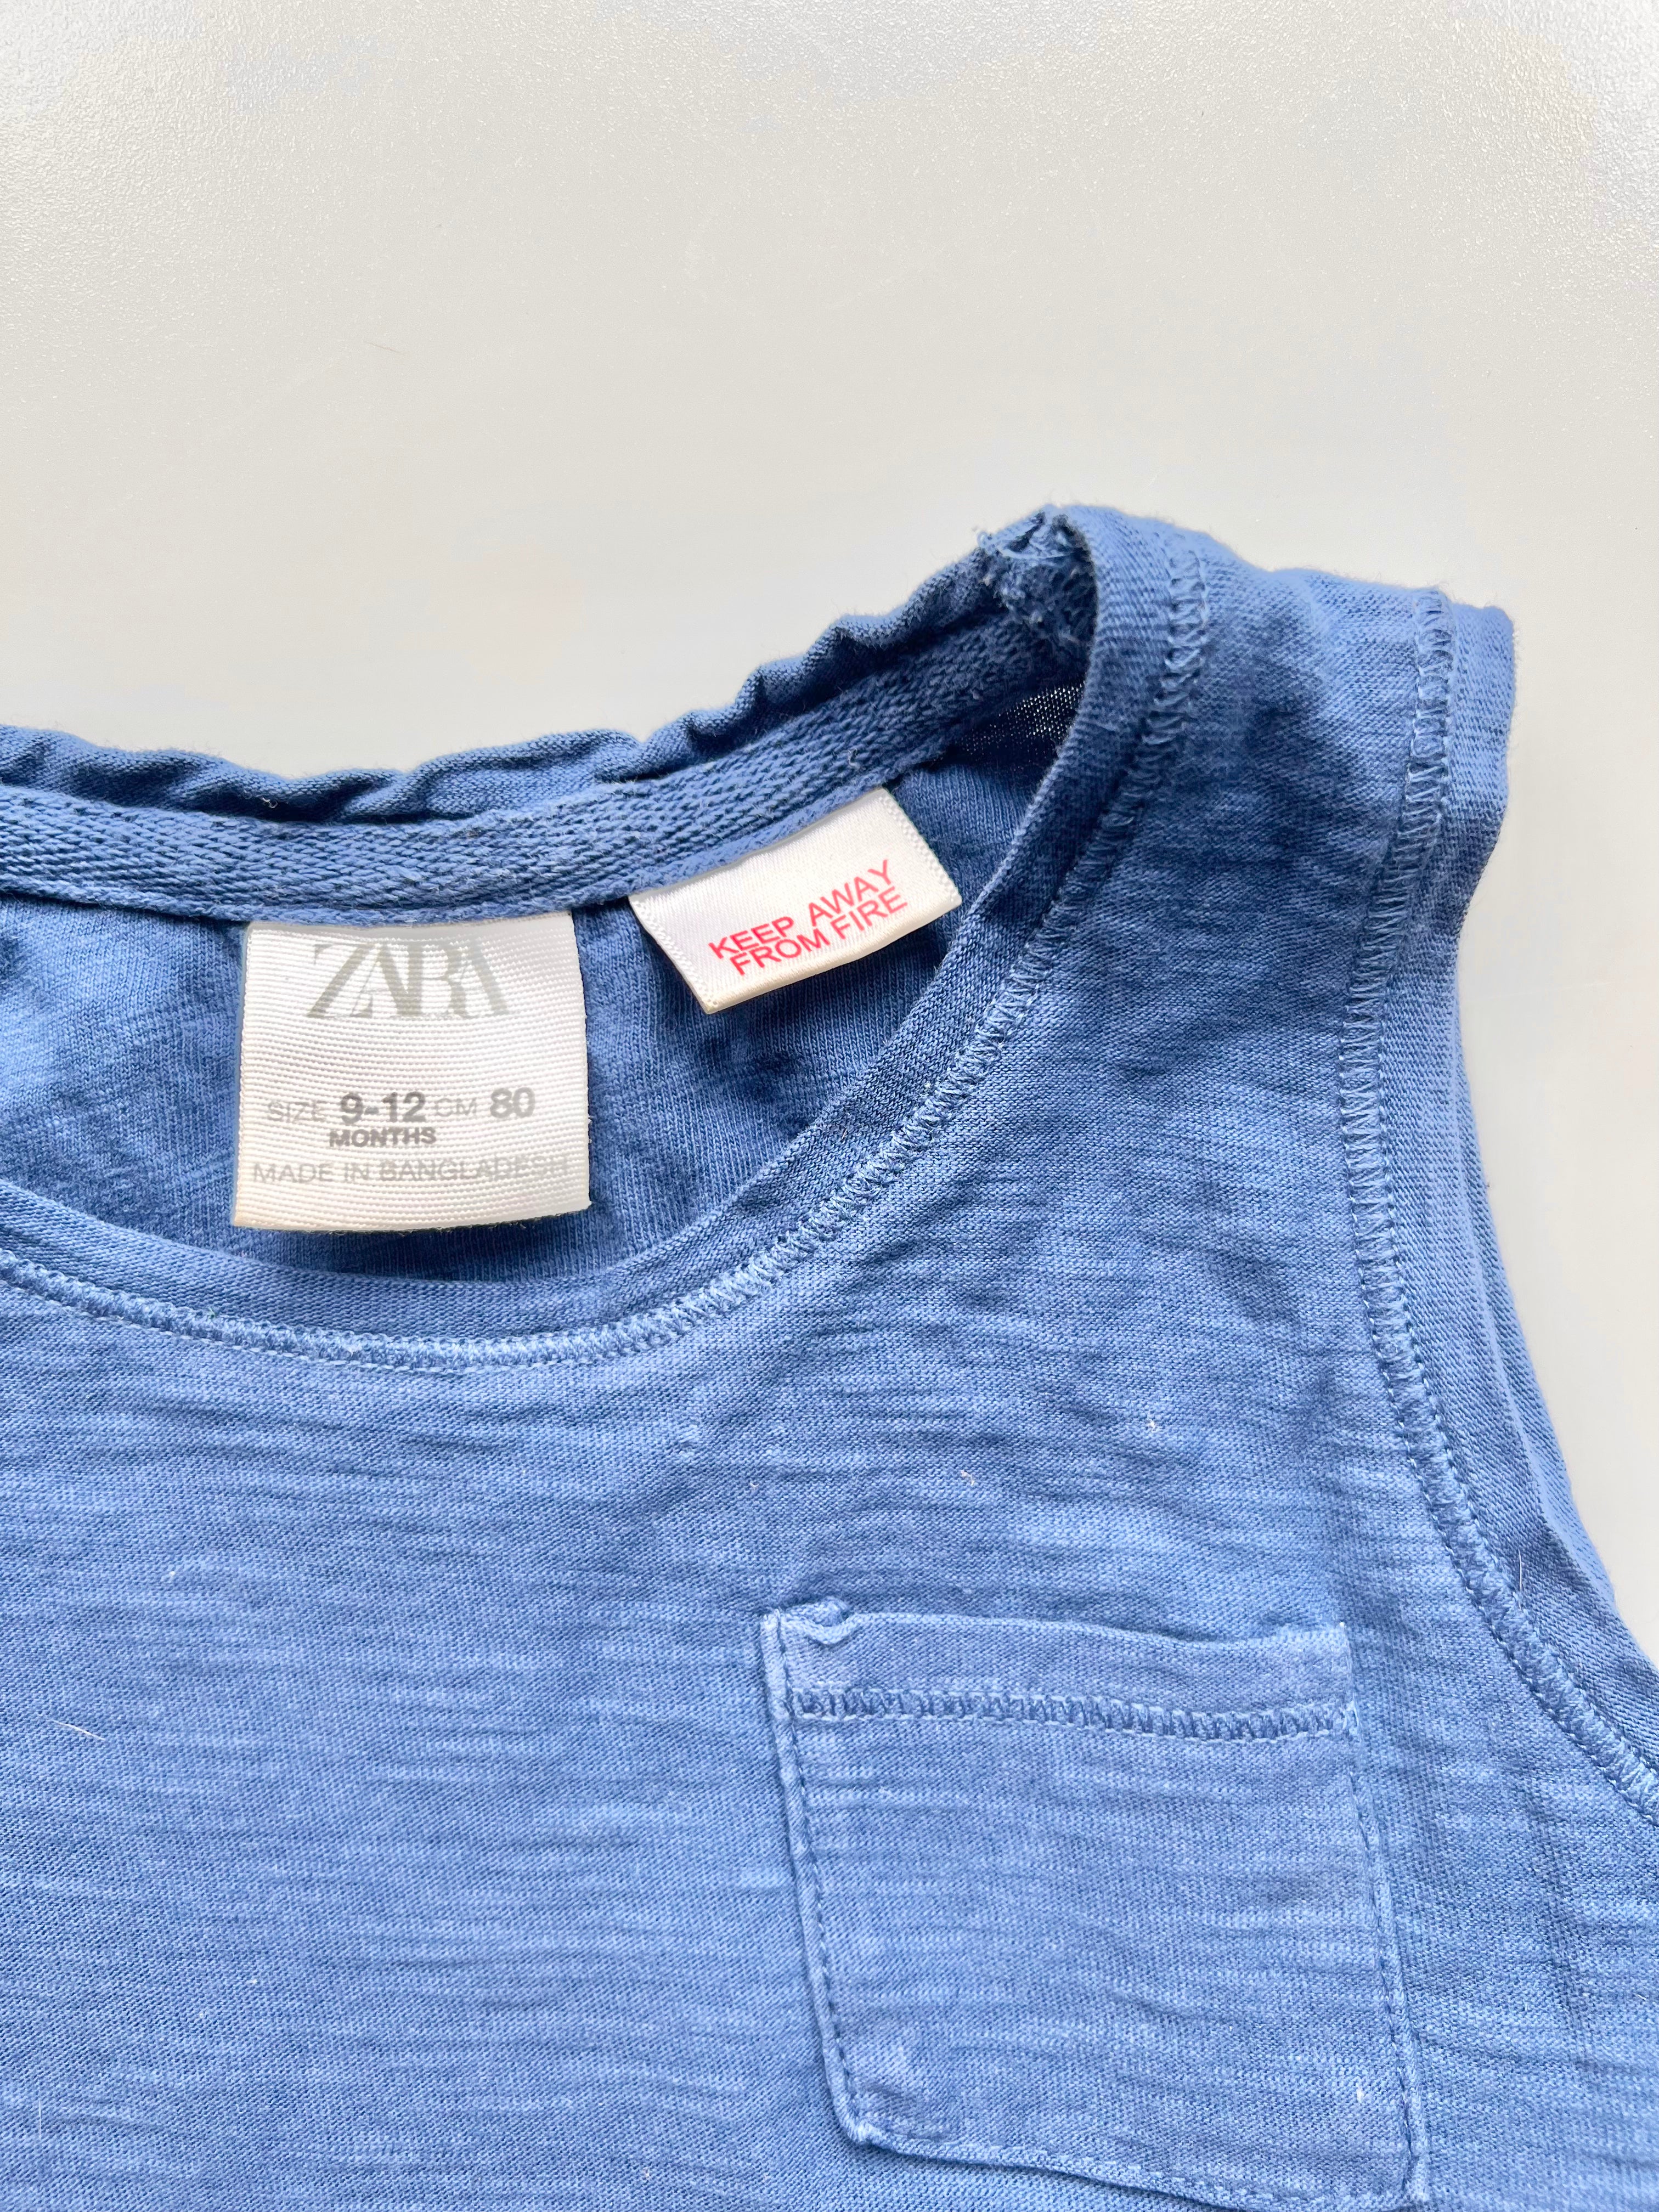 Zara Blue Marl Vest 9-12 Months